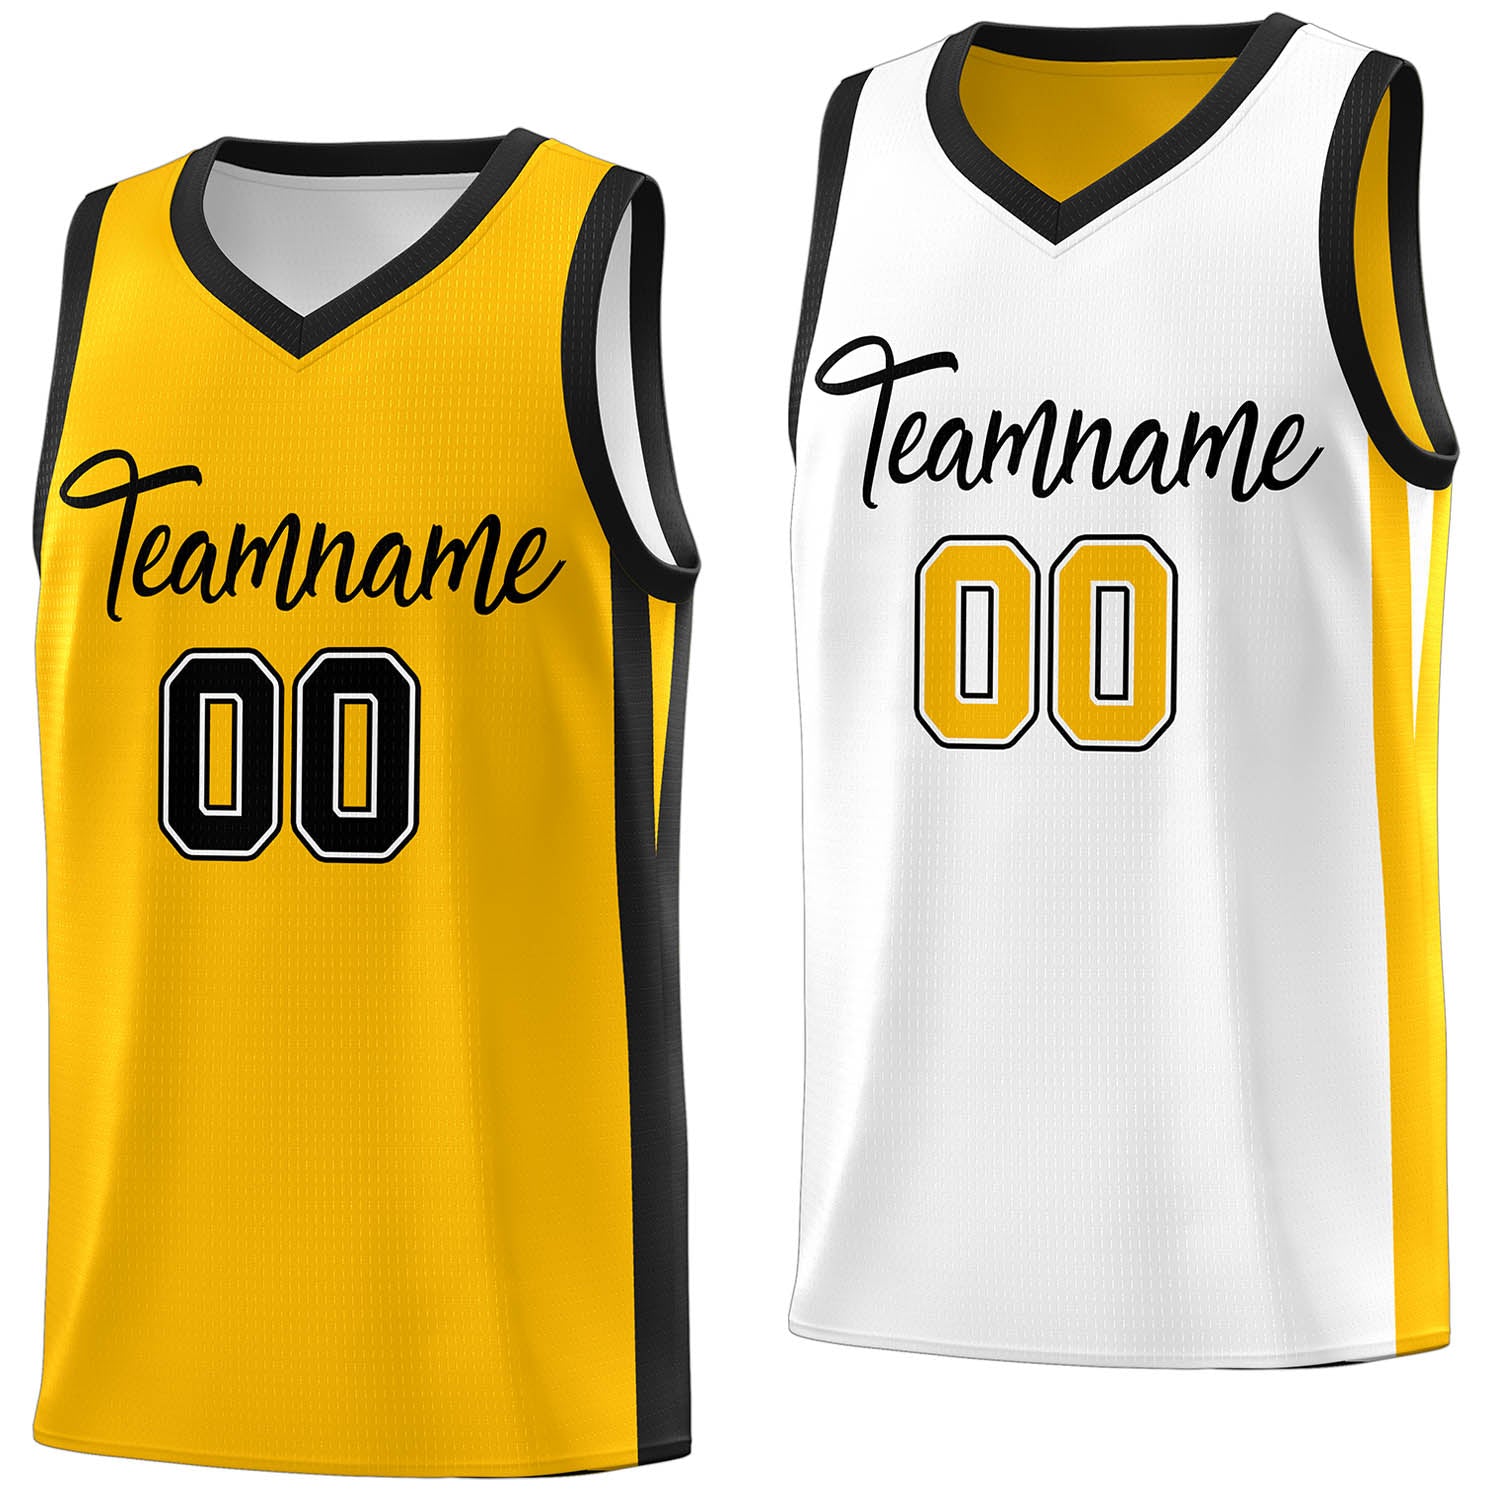 KXK Custom Black Yellow Double Side Sets Design Sportswear Basketball Jersey